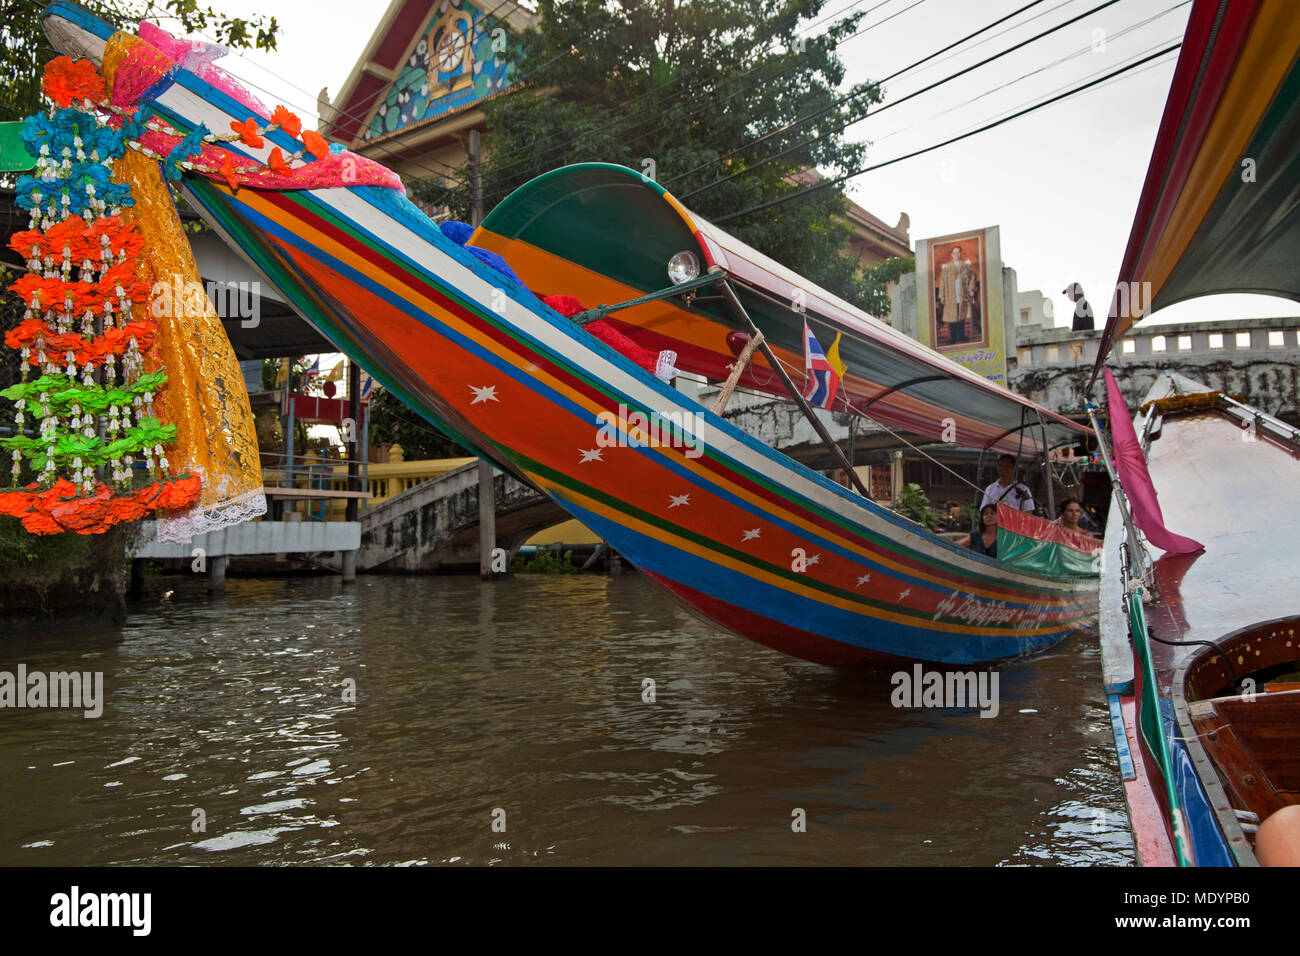 Bateau longtail thailandais sur canal à Thon buri, Bangkok, Thaïlande Banque D'Images